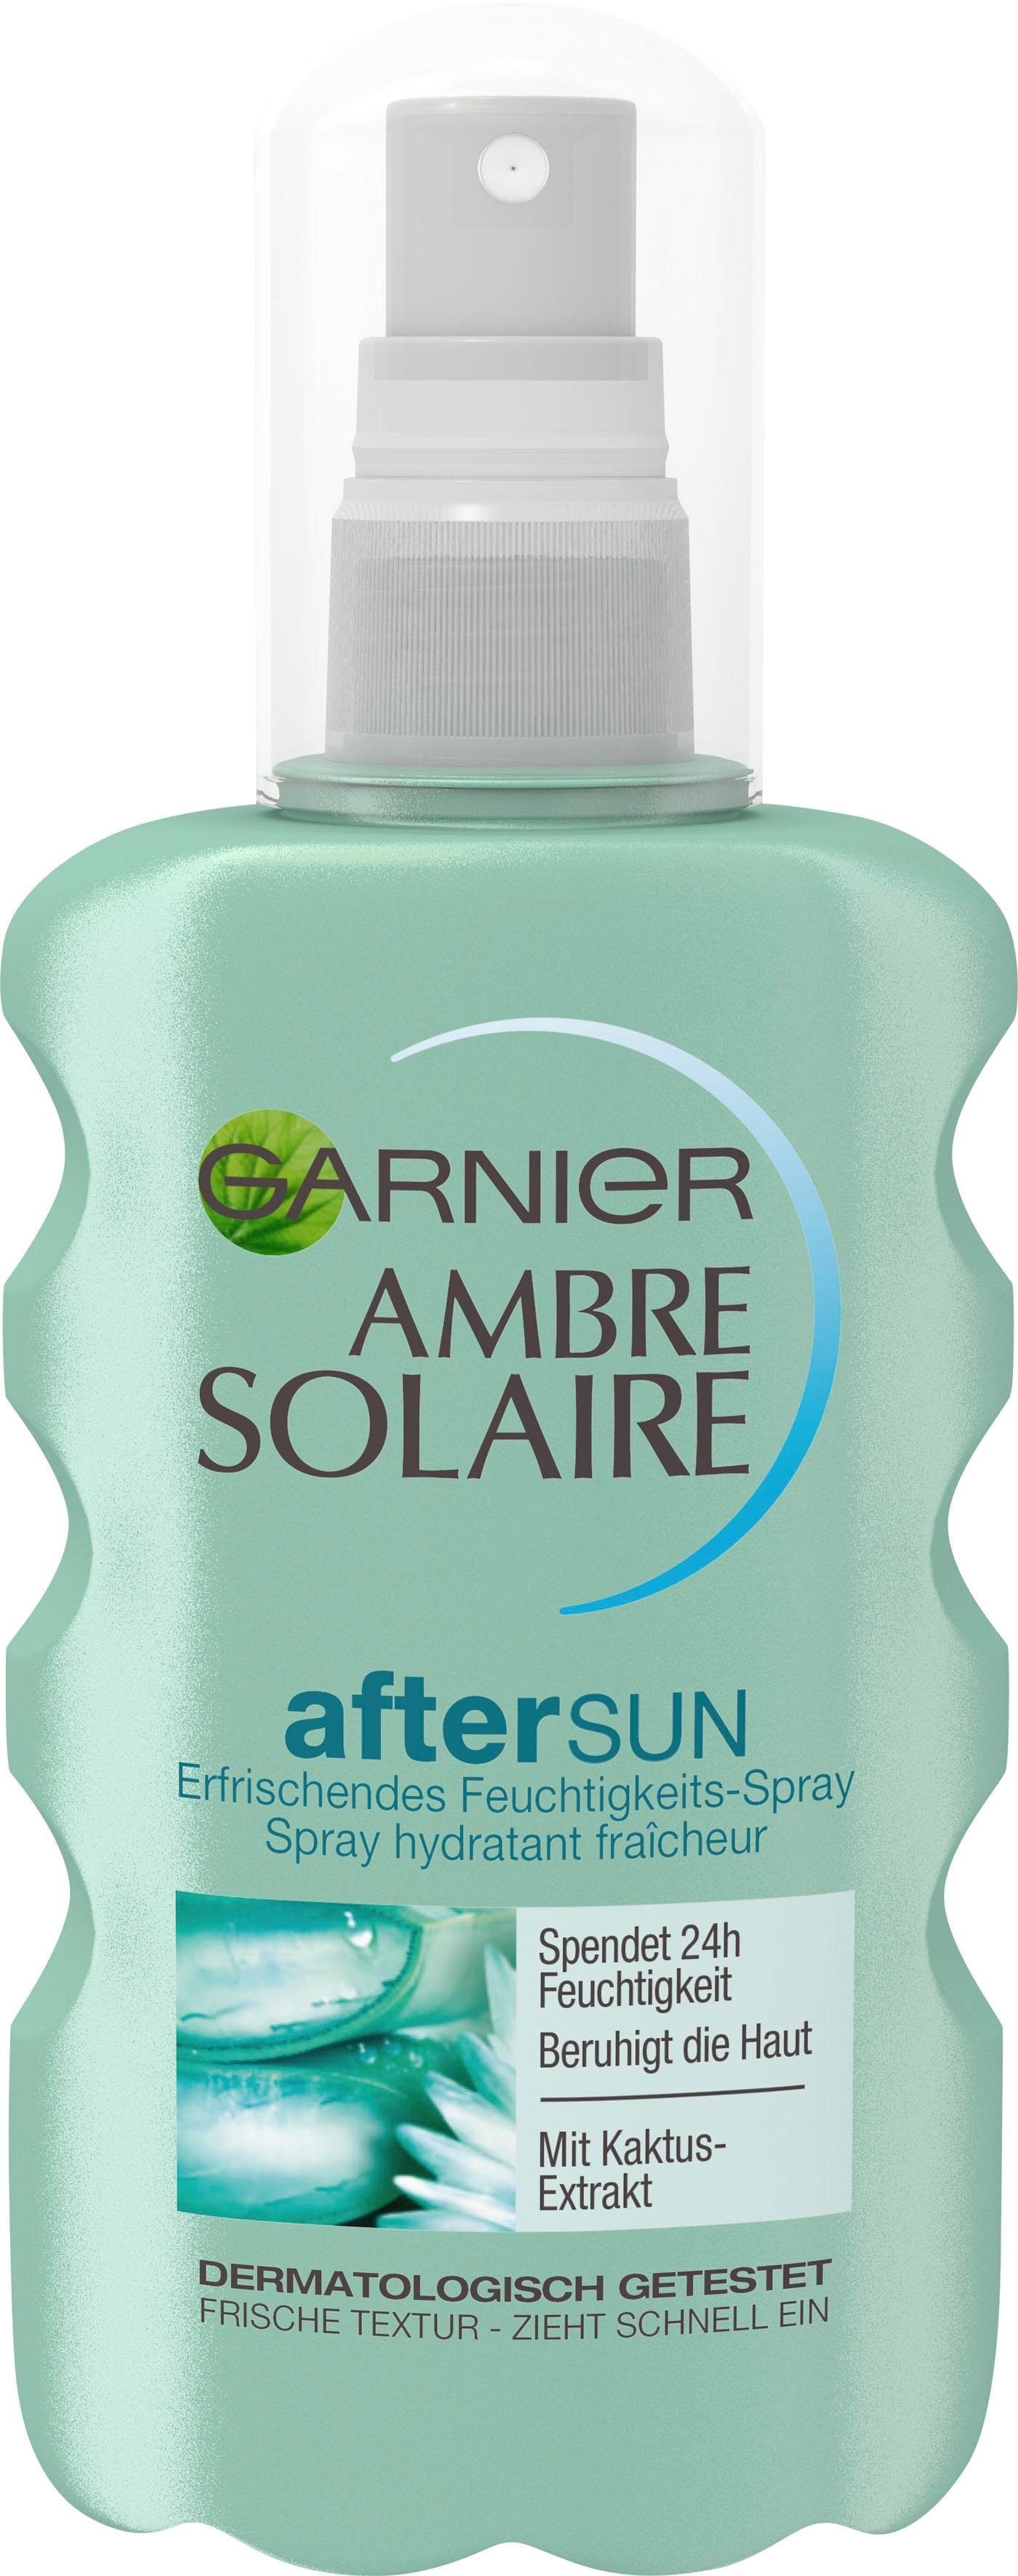 GARNIER After Sun-Spray Ambre Solaire mit Feuchtigkeits-Après, Kaktus-Extrakt